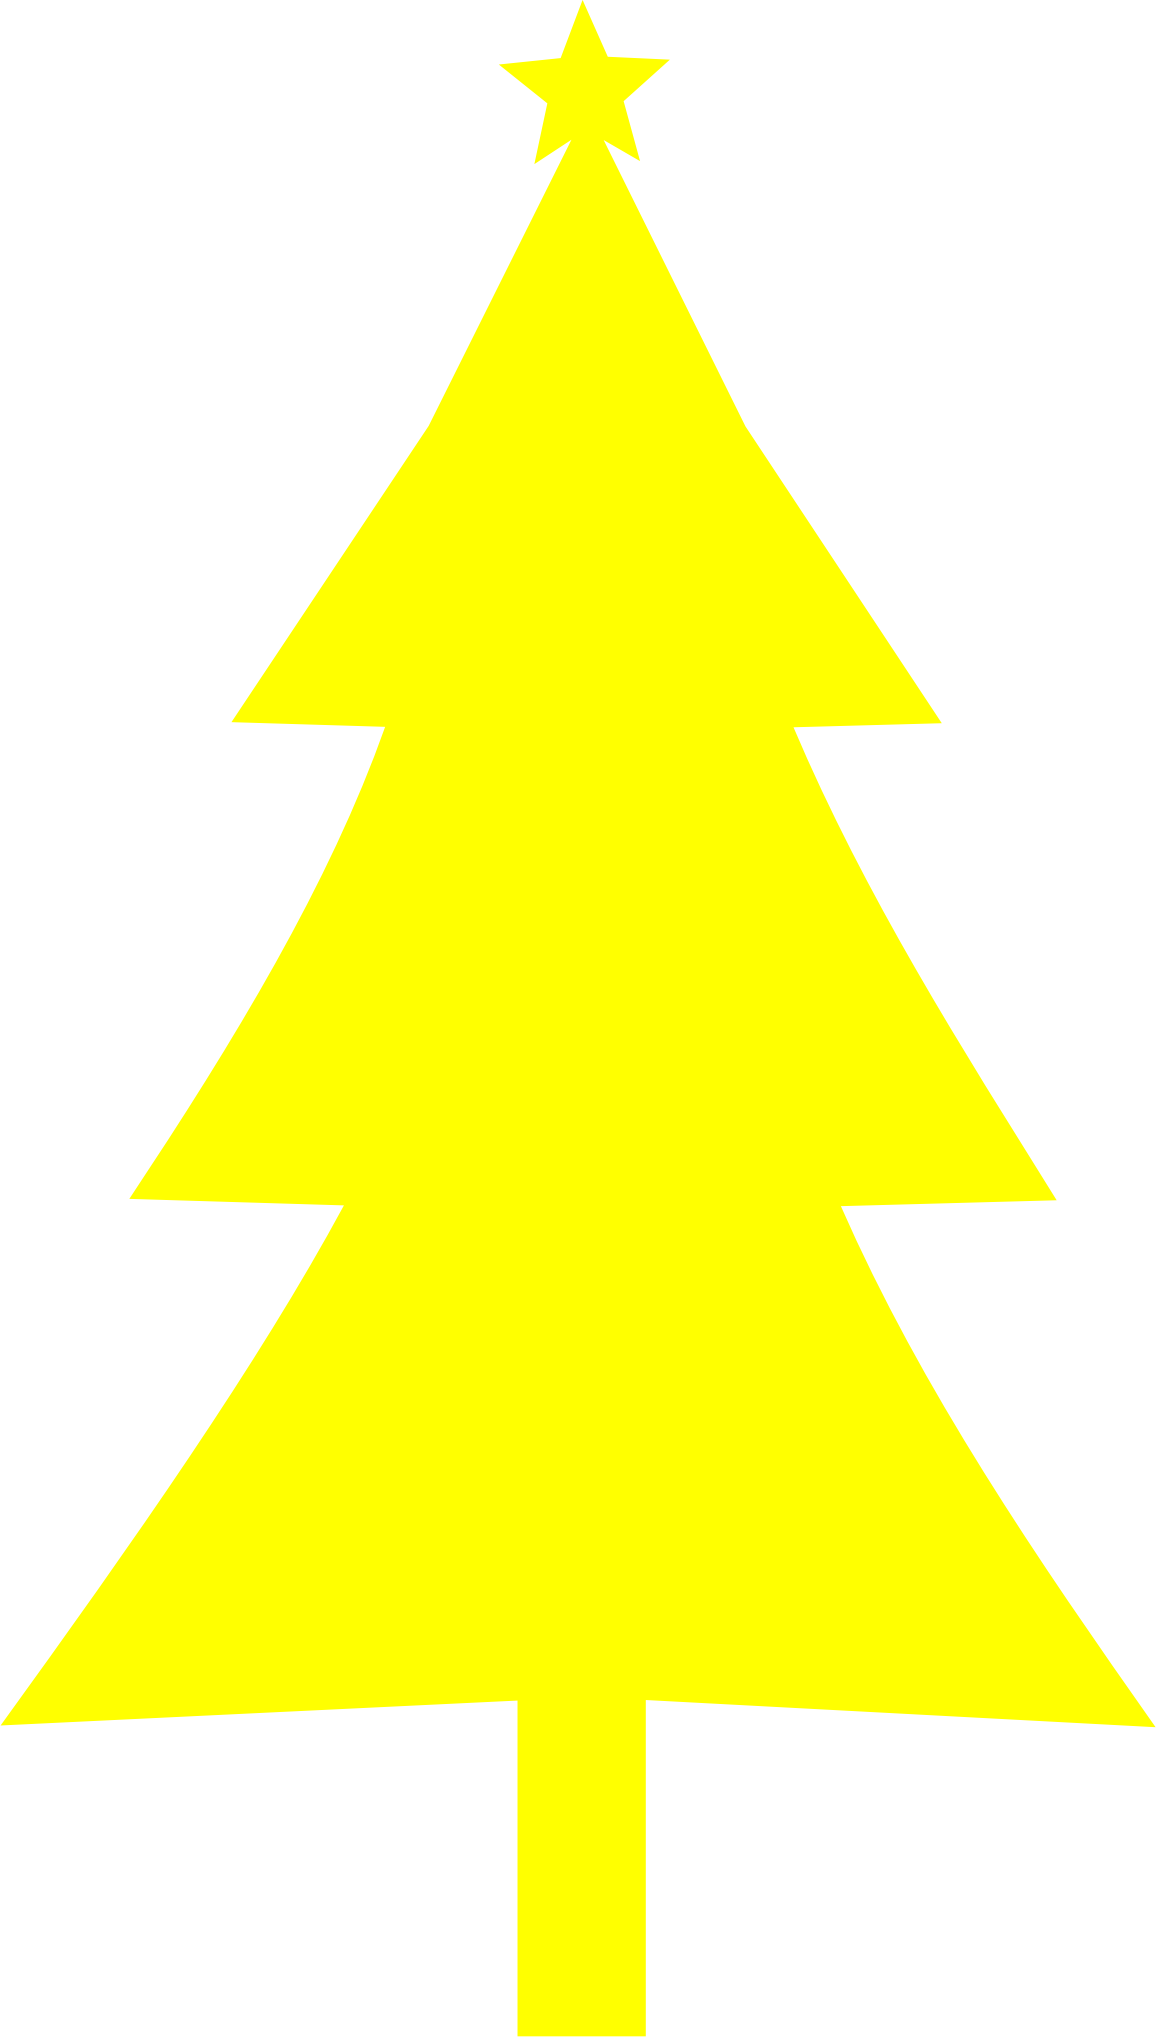 Big Image - Yellow Christmas Tree (1156x2037)